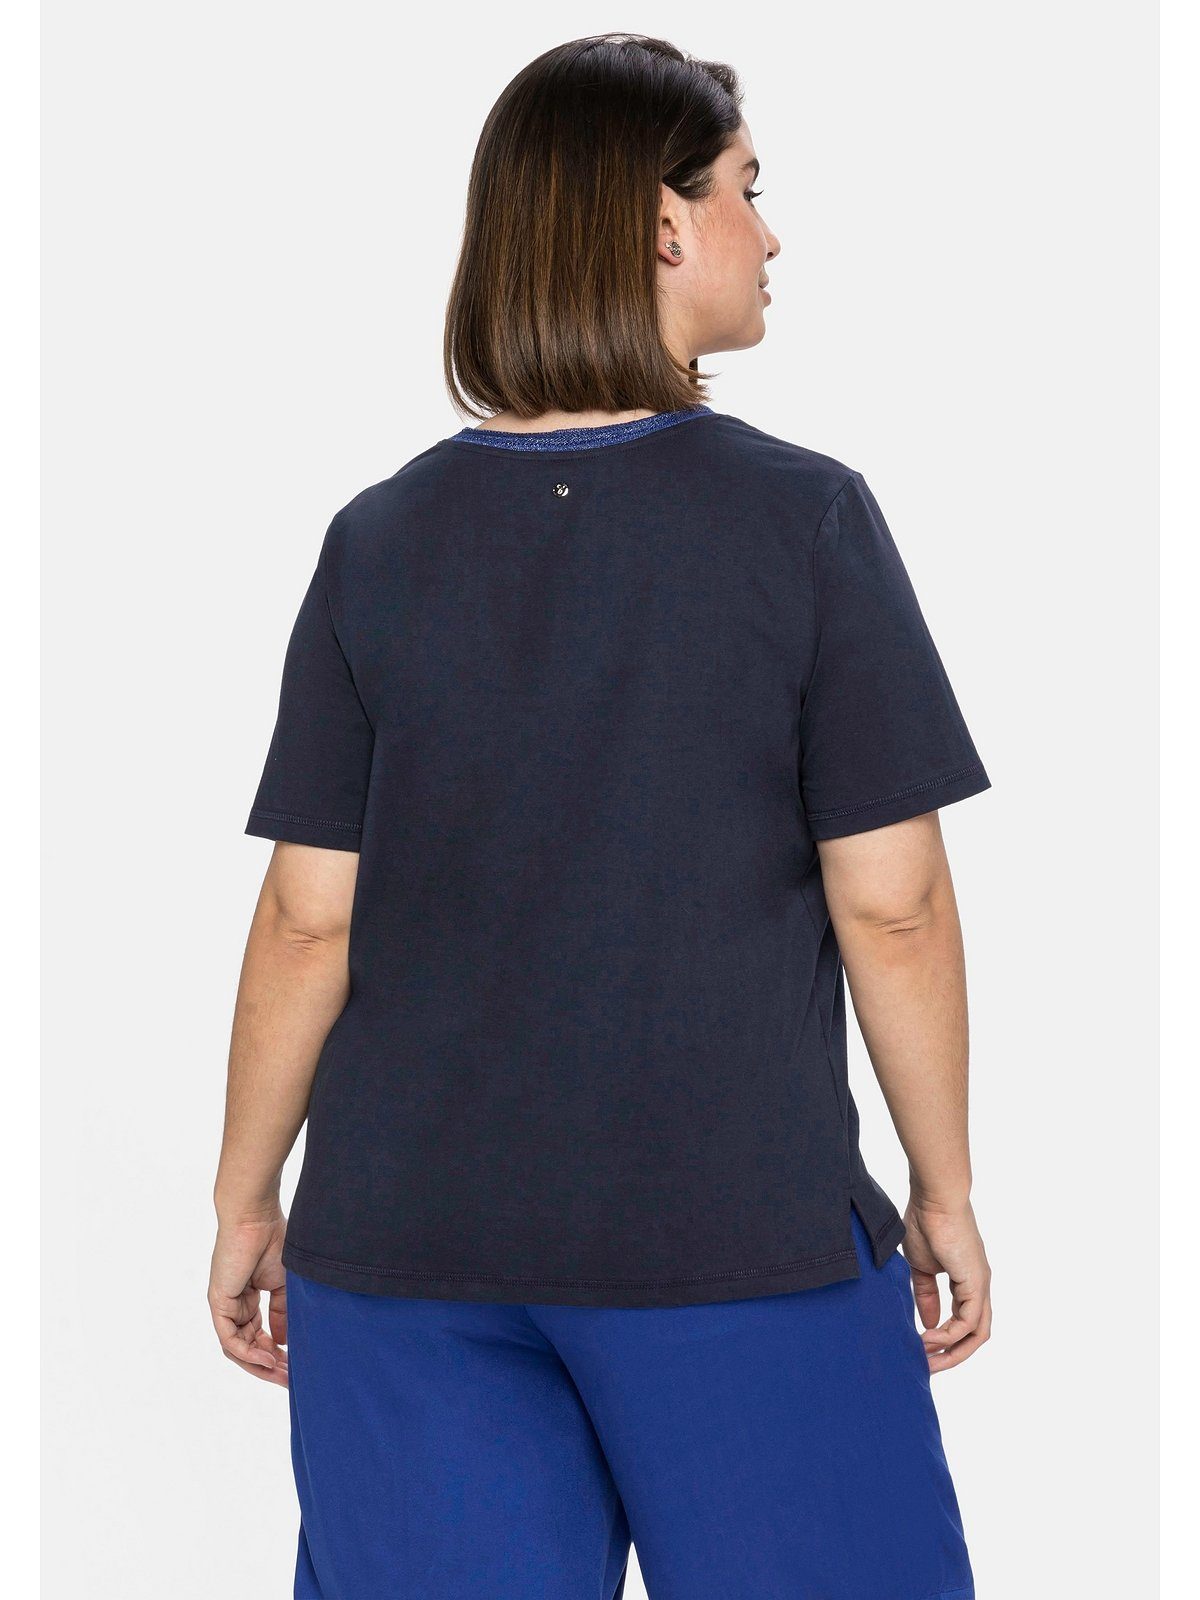 Sheego T-Shirt Große am Frontdruck nachtblau Effektgarn Ausschnitt modischem Größen mit und